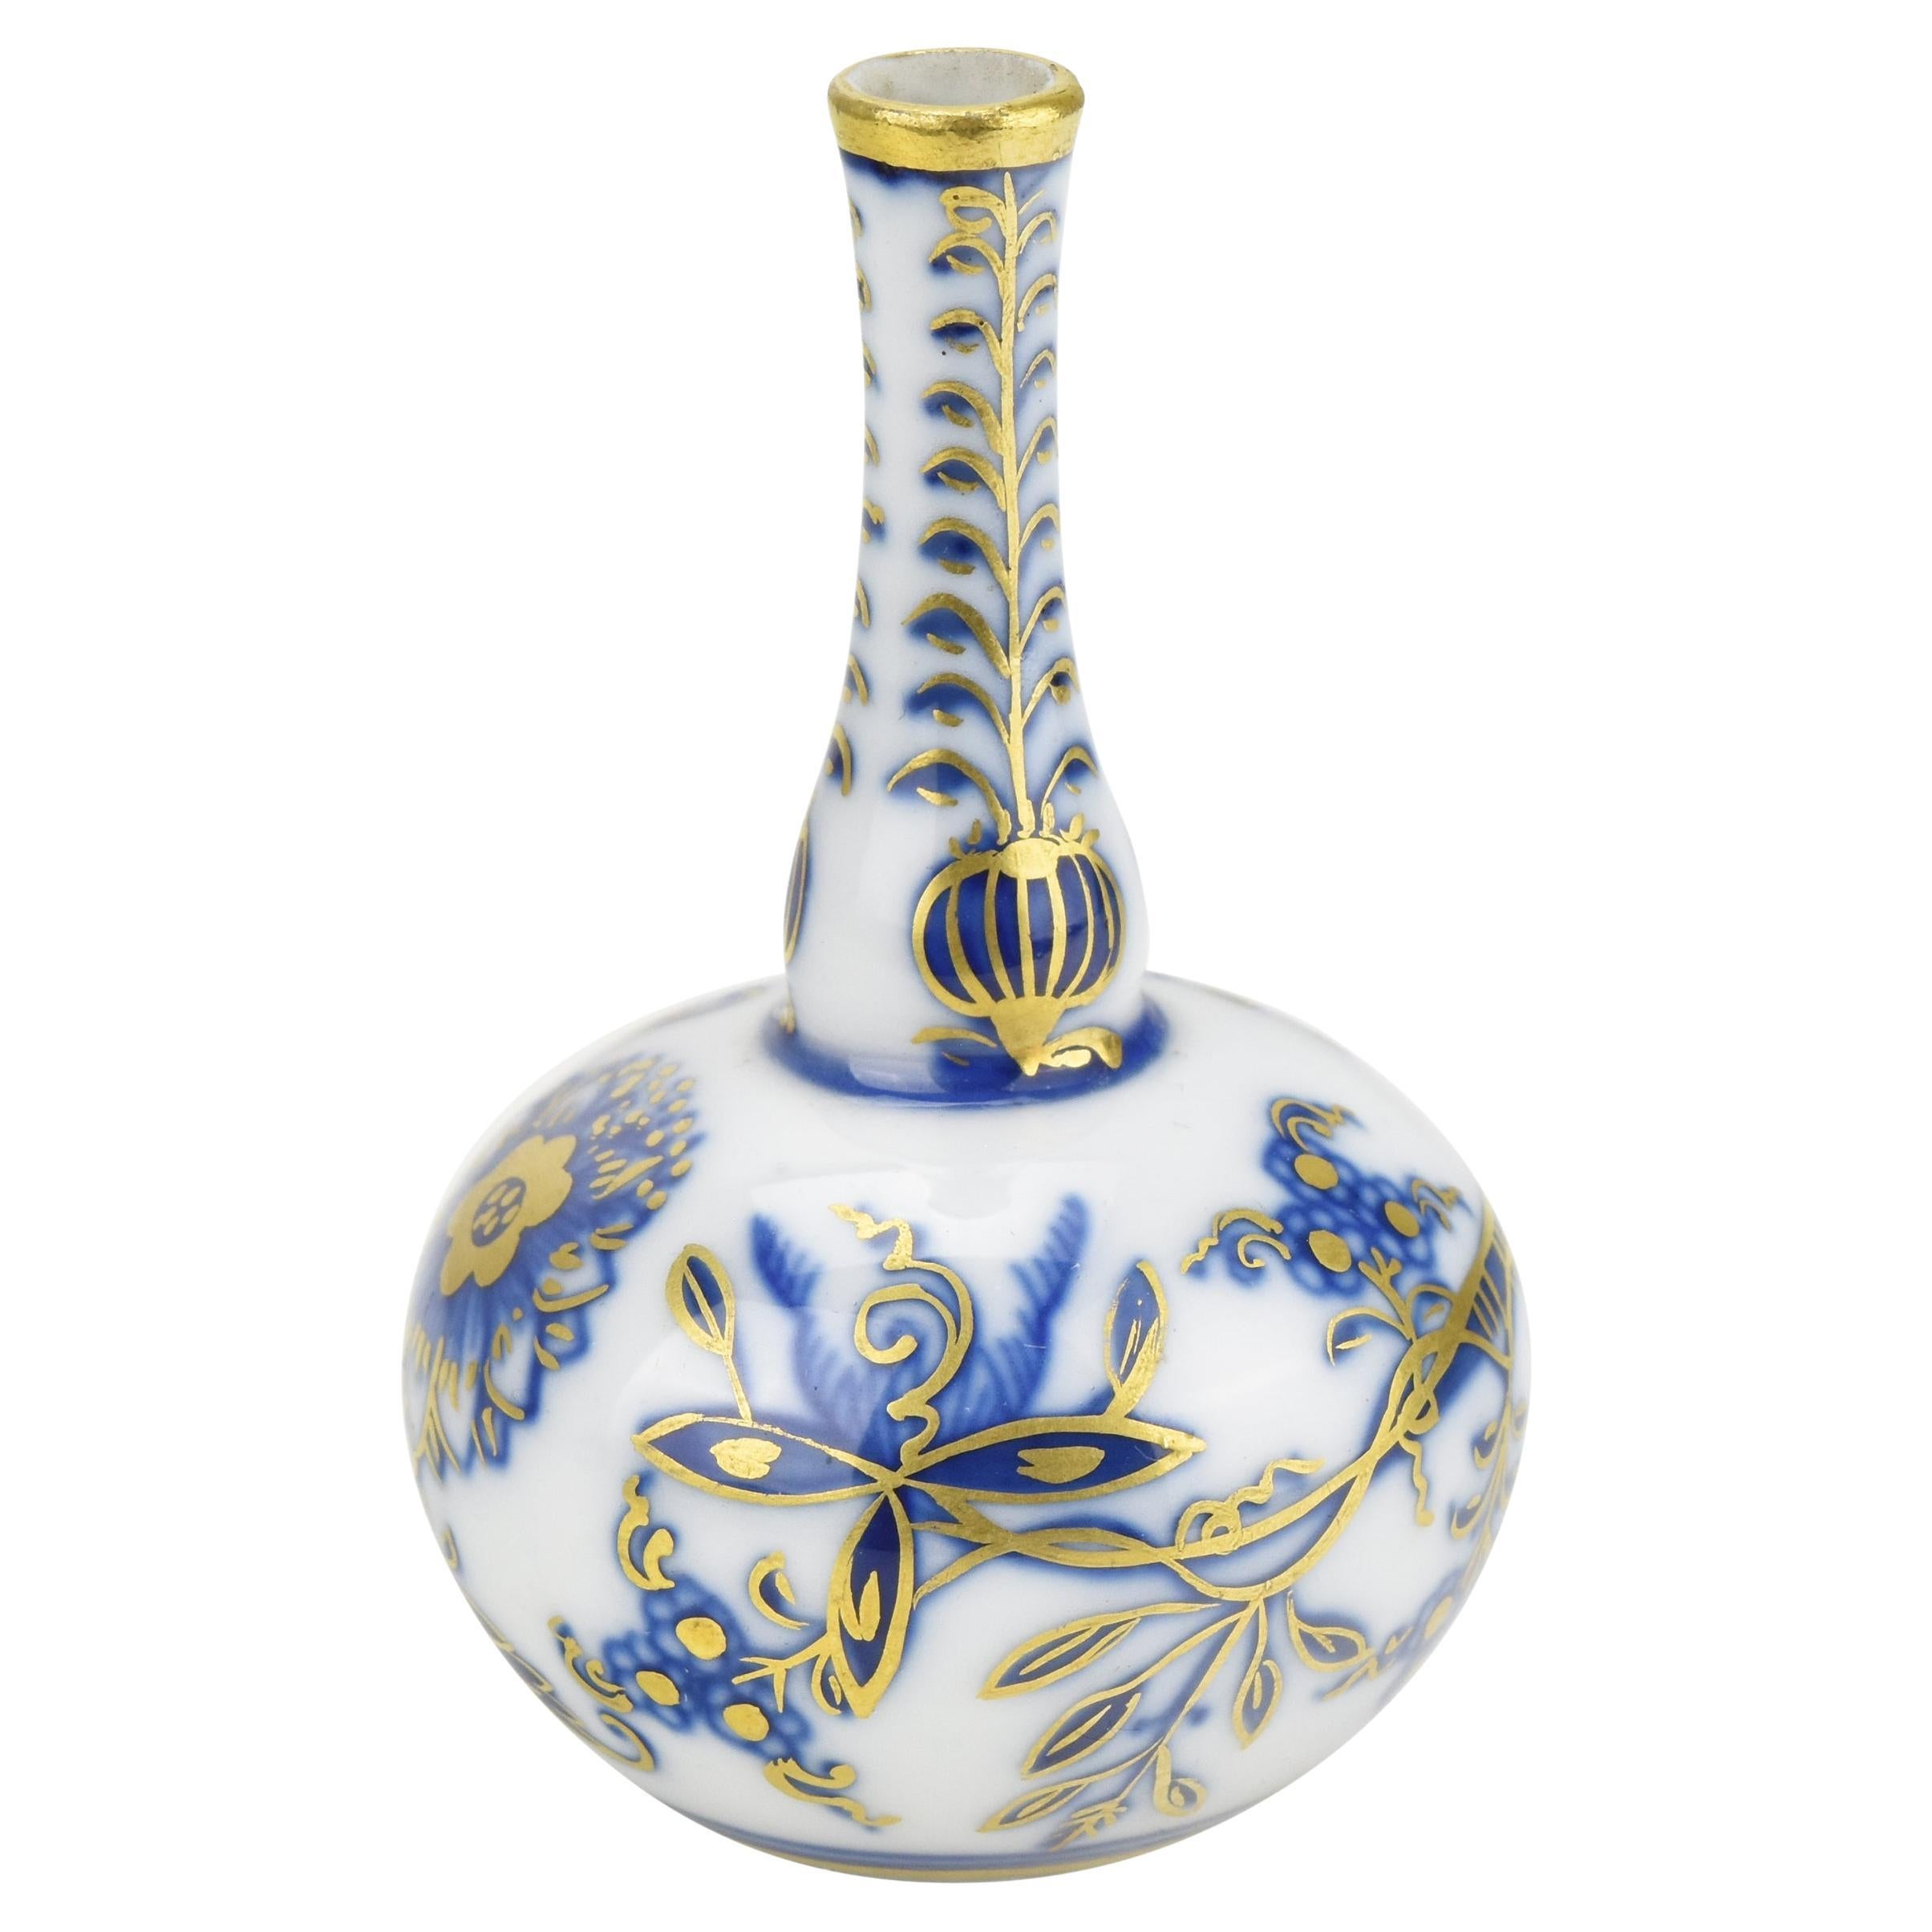 Antique Meissen Porcelain Miniature Vase Handpainted Onion Pattern with Gold